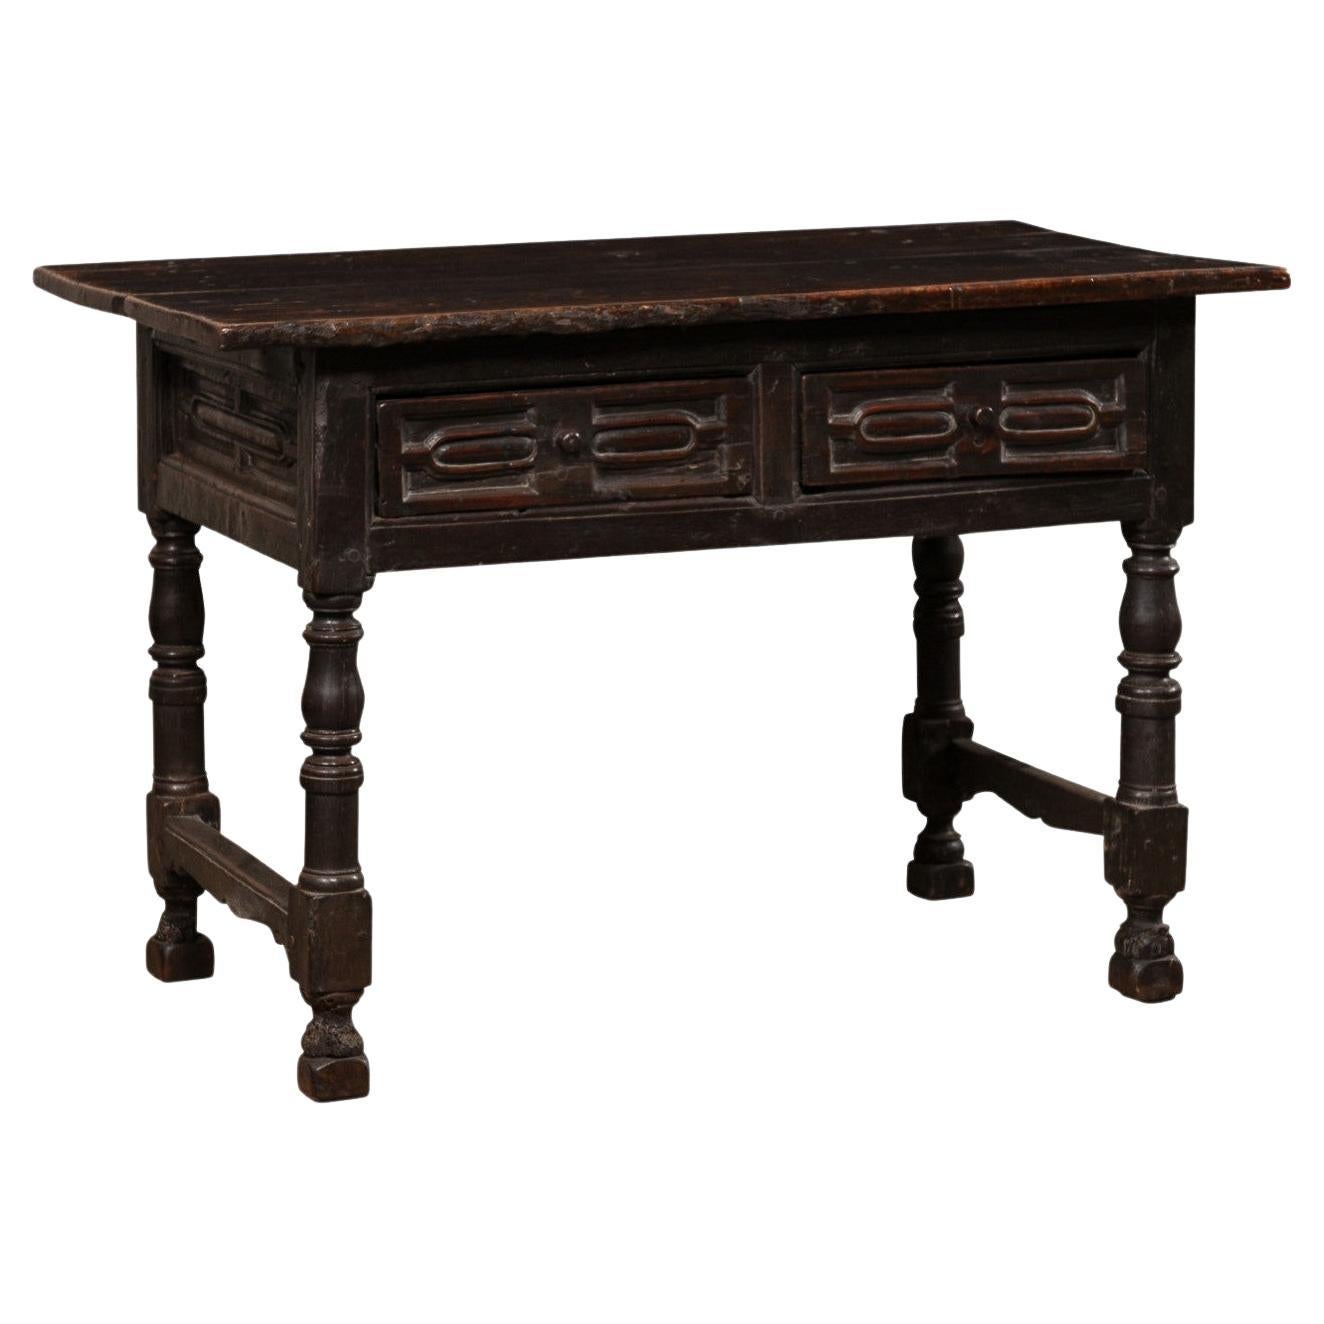 Table d'appoint en noyer sculpté du début du XVIIIe siècle, avec tiroirs, tous les côtés étant sculptés en vente